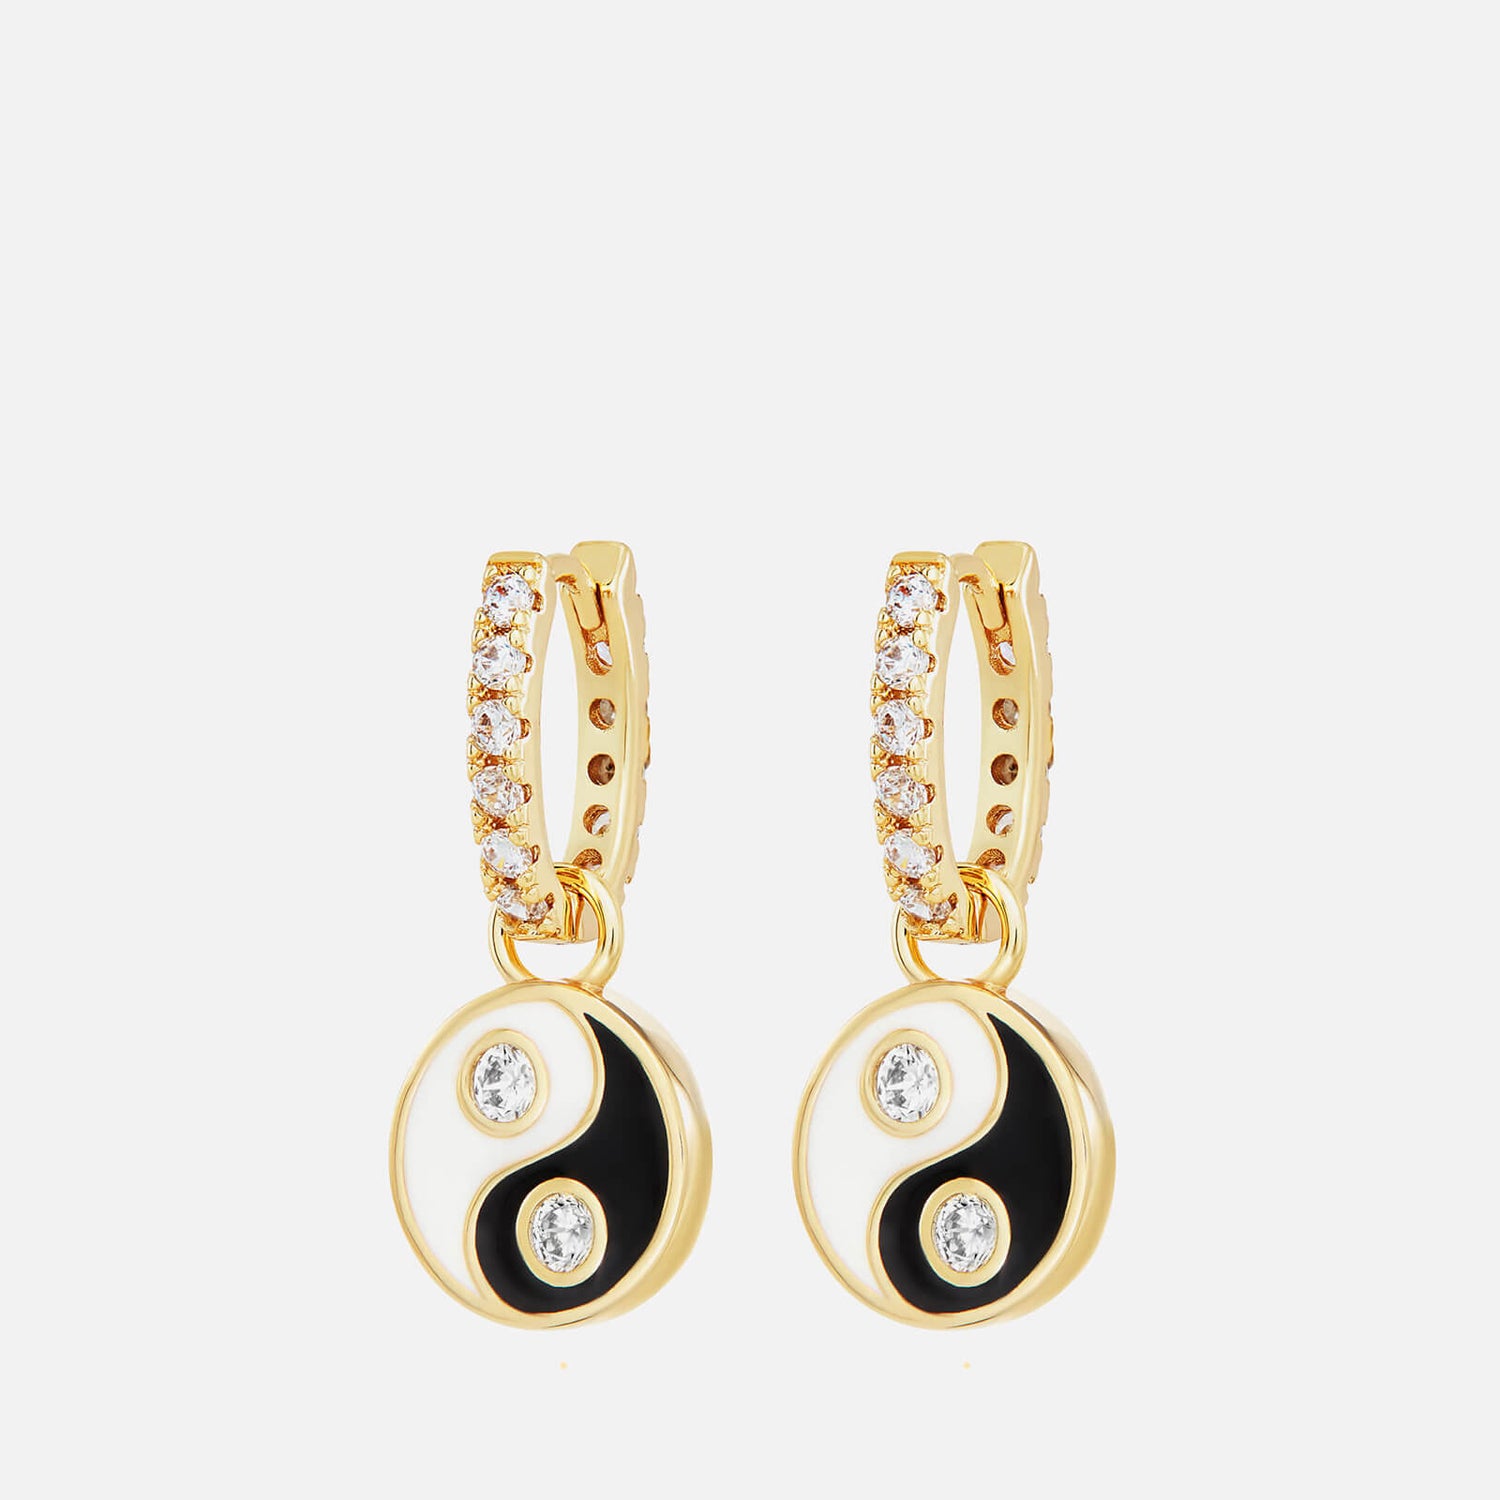 Celeste Starre Women's Find Your Balance Earrings - Gold